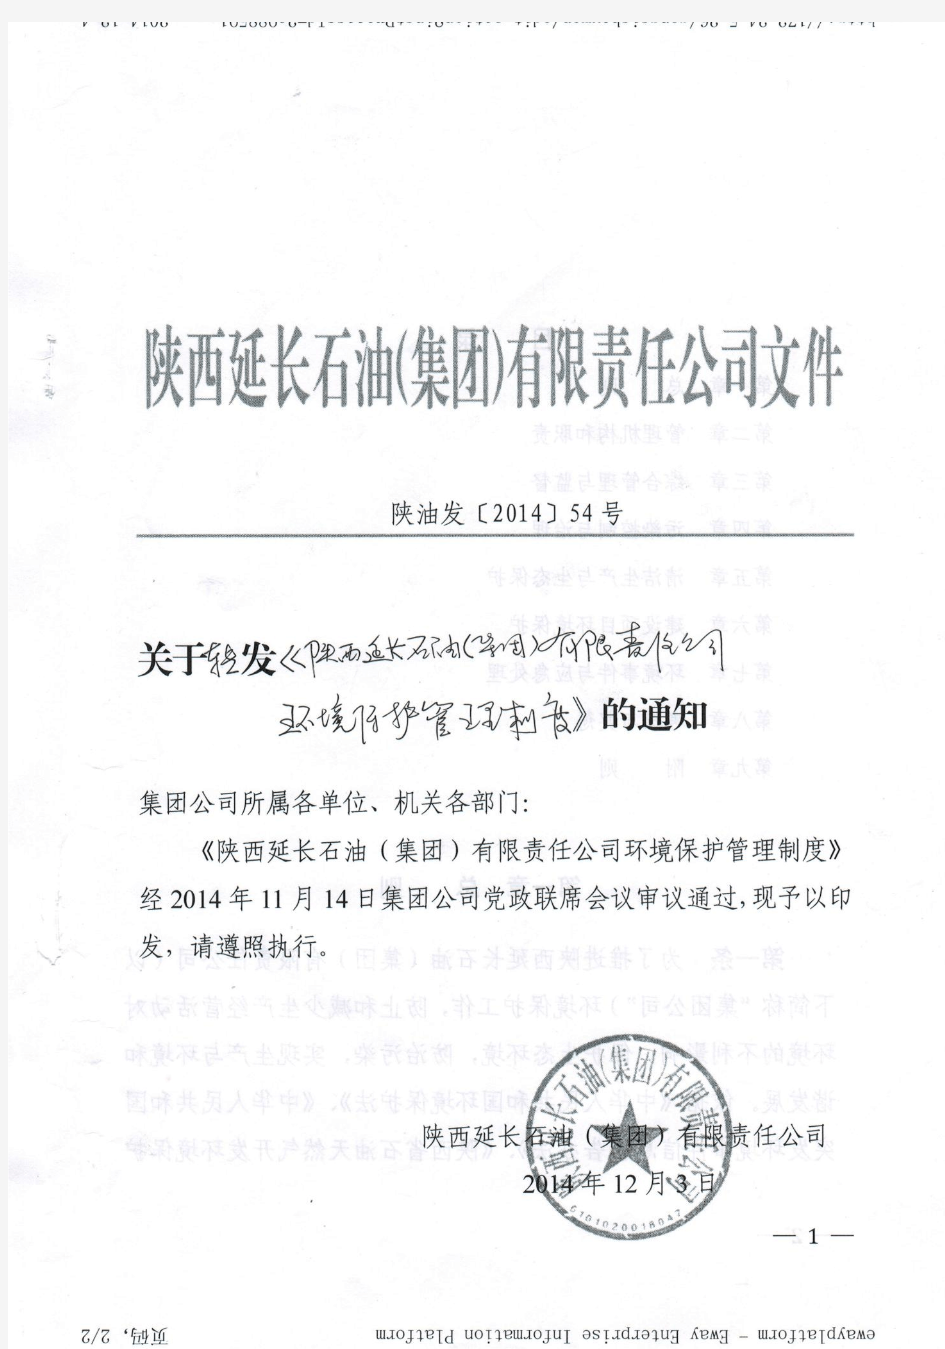 关于转发《陕西延长石油集团有限责任公司环境保护管理制度》的通知